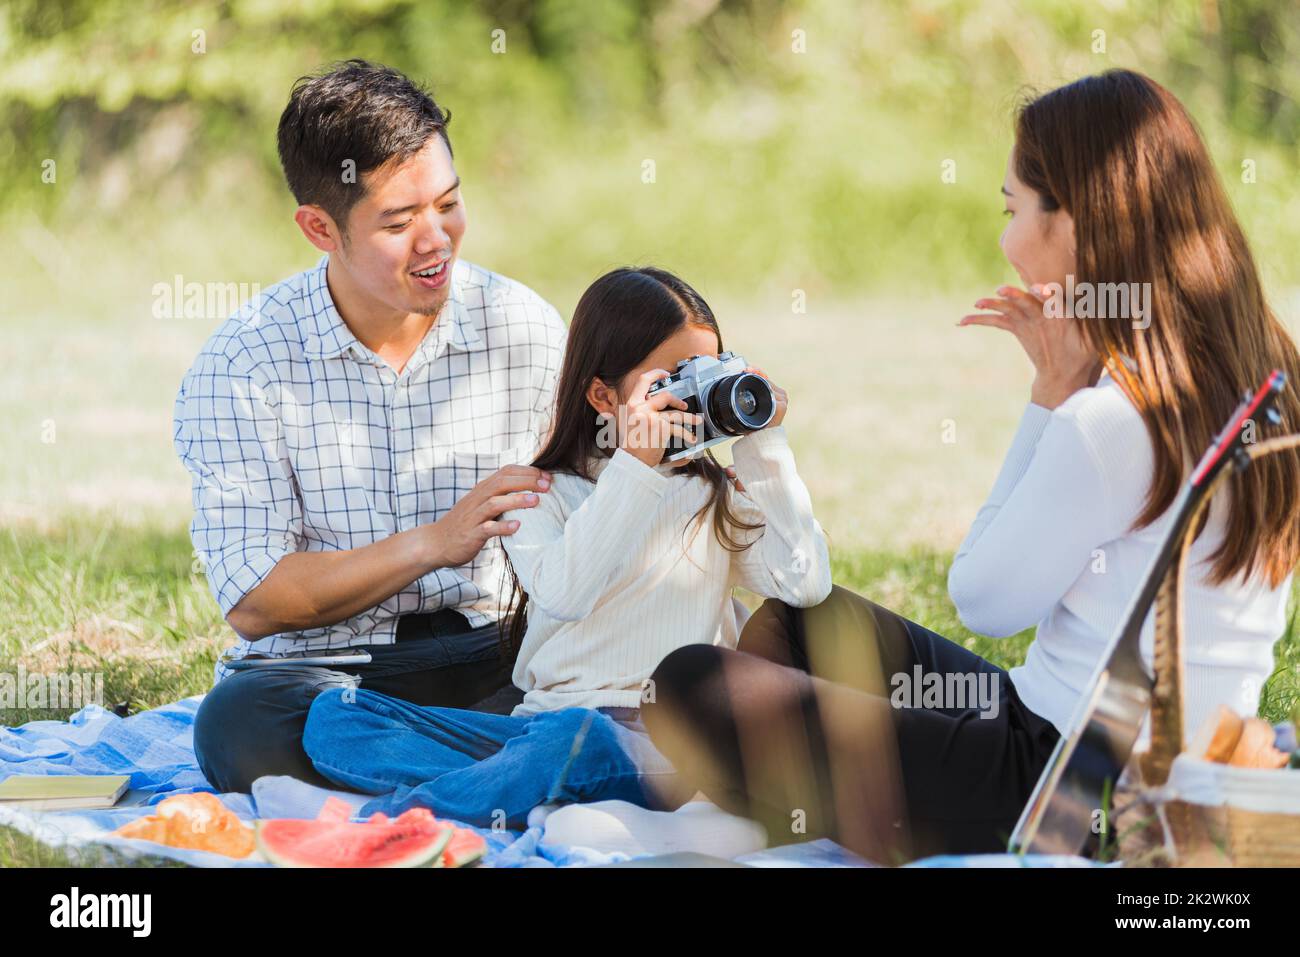 Bonne famille s'amuser ensemble en plein air assis sur l'herbe faites la fête en prenant des photos avec un appareil photo rétro pour un pique-nique Banque D'Images